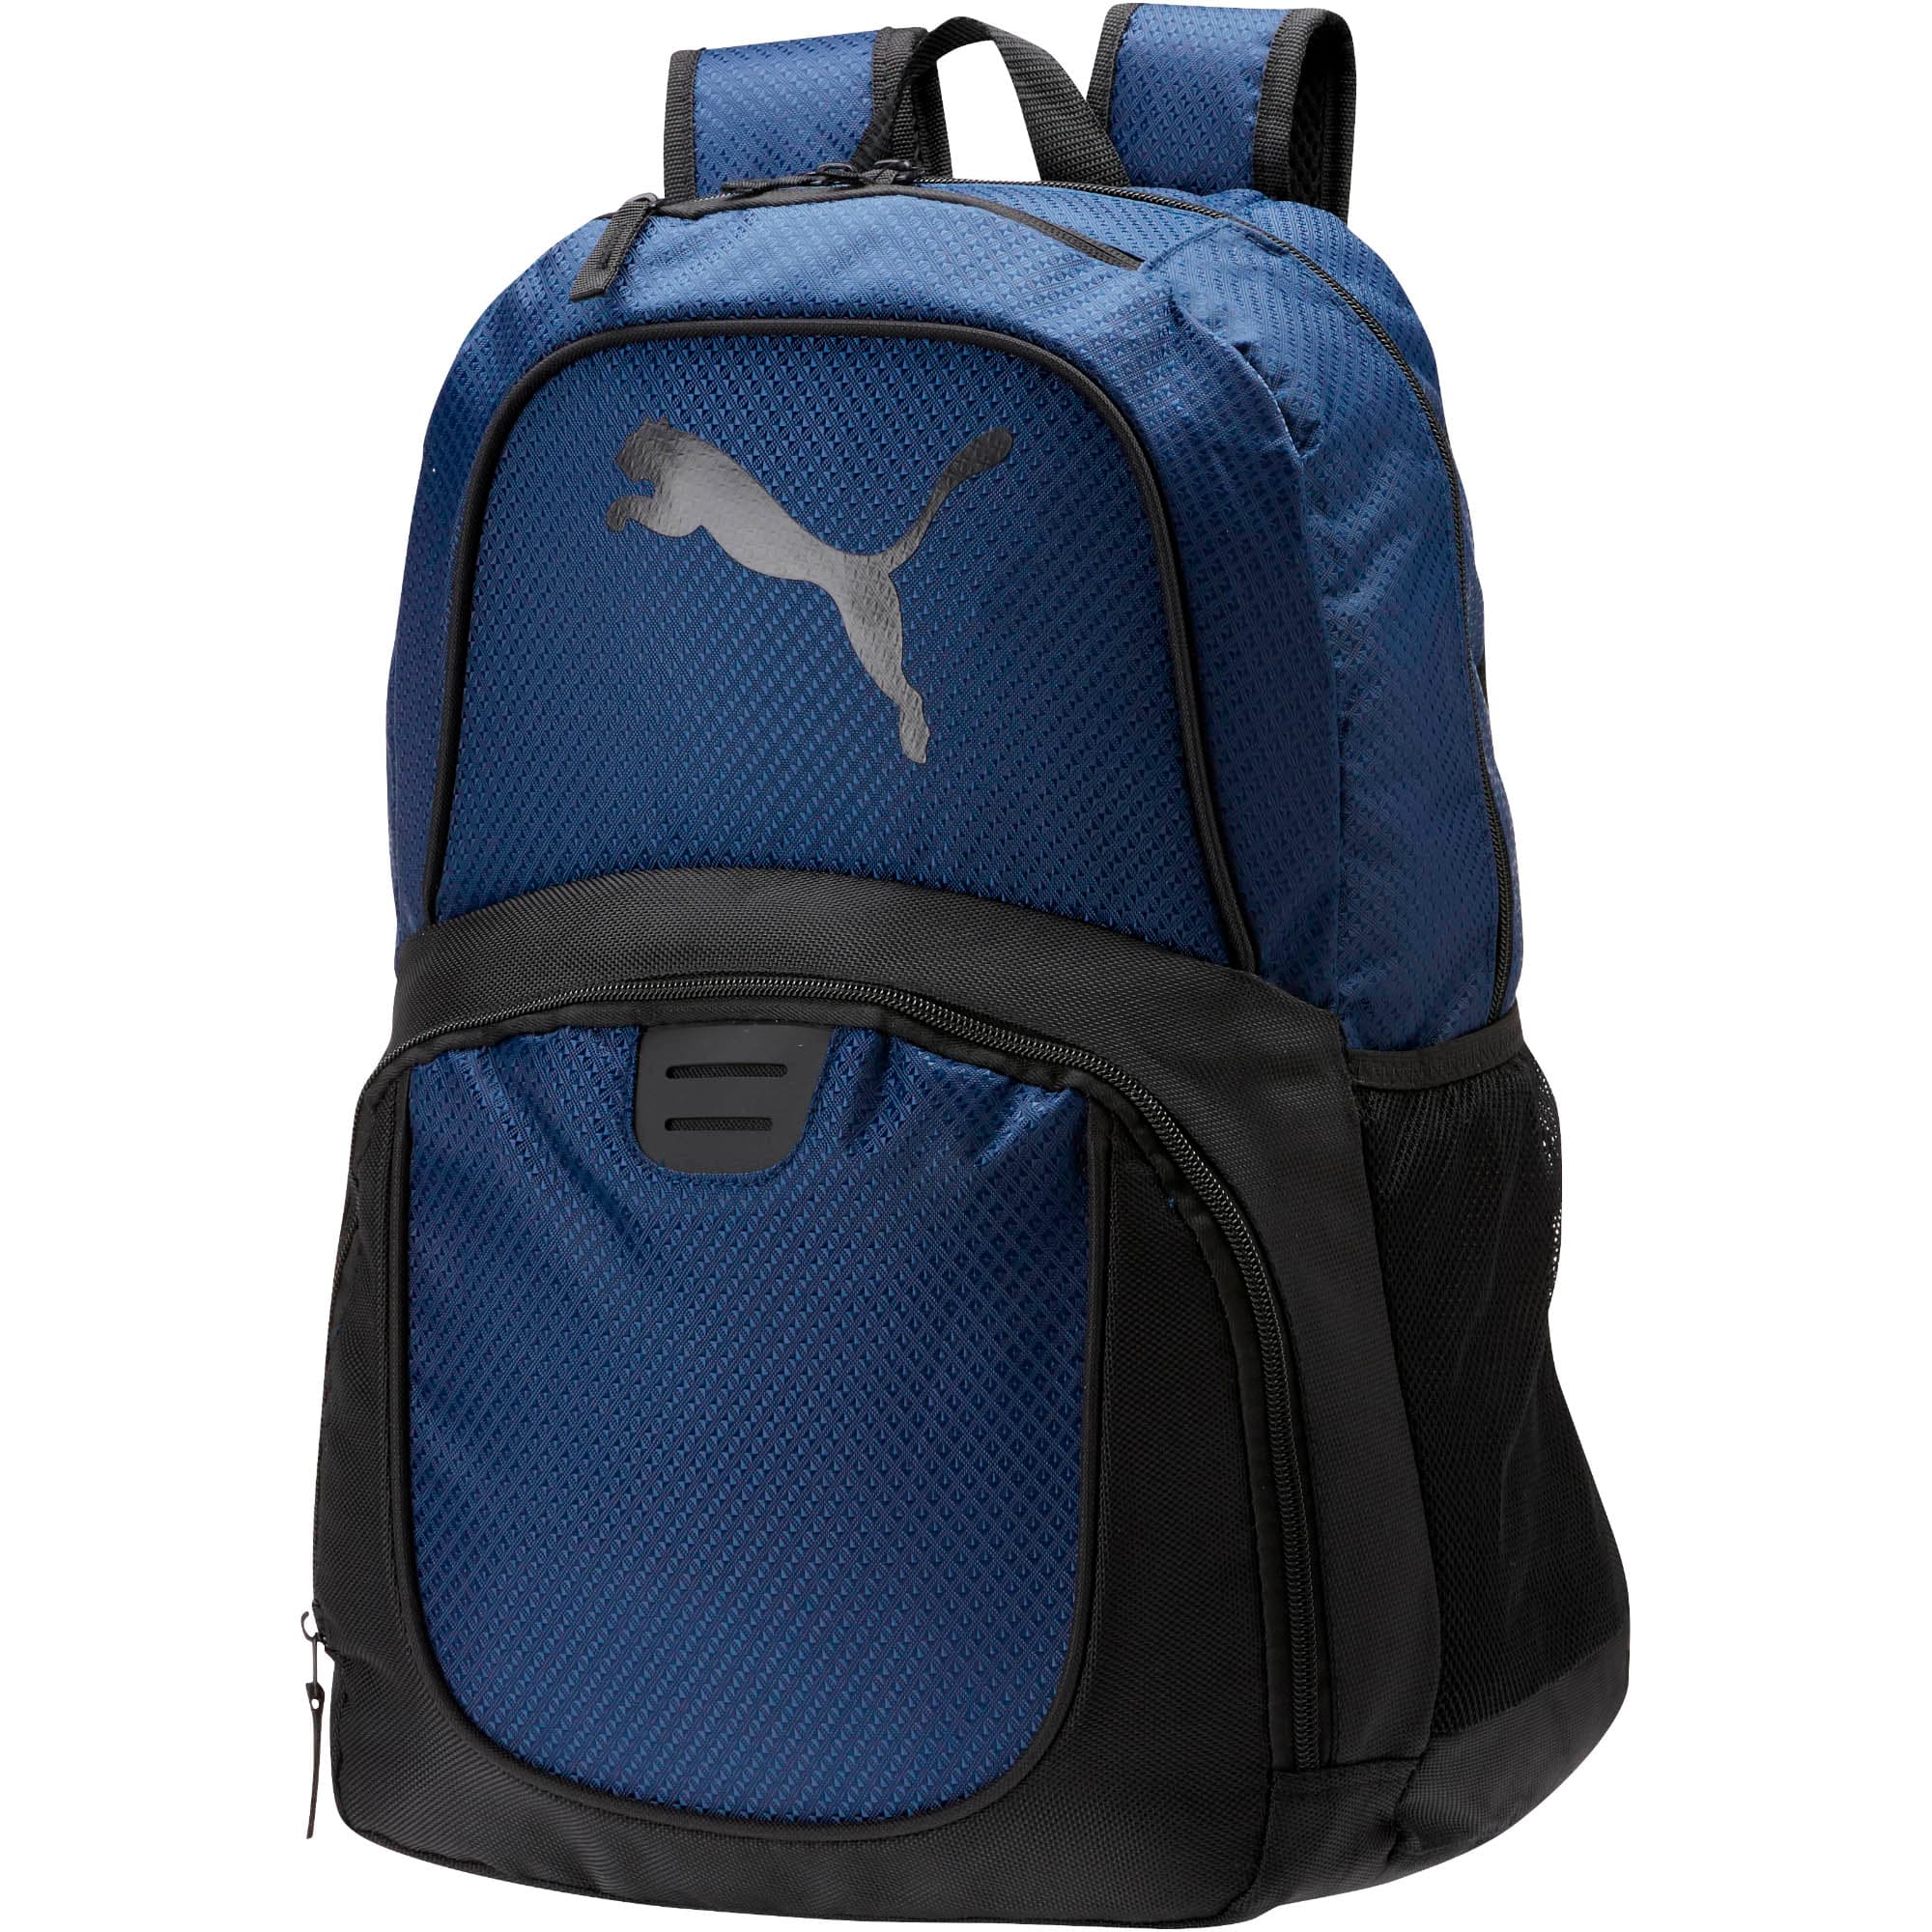 evercat contender 3.0 backpack